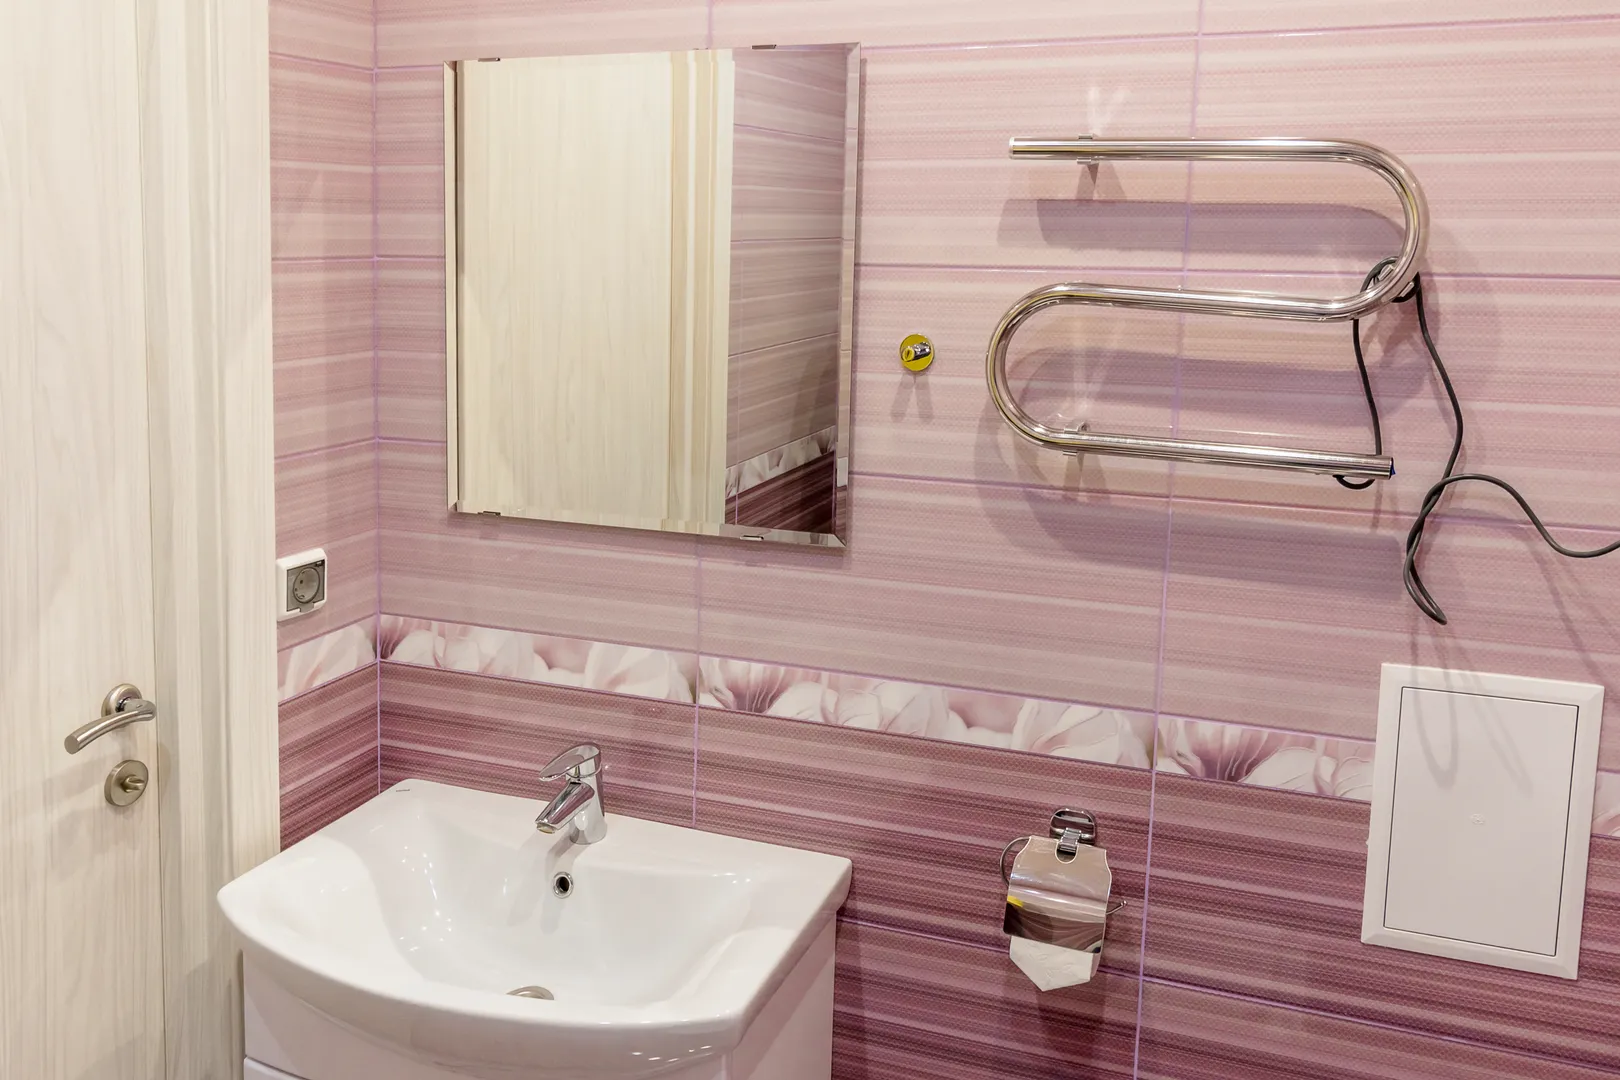 удобная красивая ванная комната со всем, что может понадобиться;) гель для душа, жидкое мыло, туалетная бумага, фен